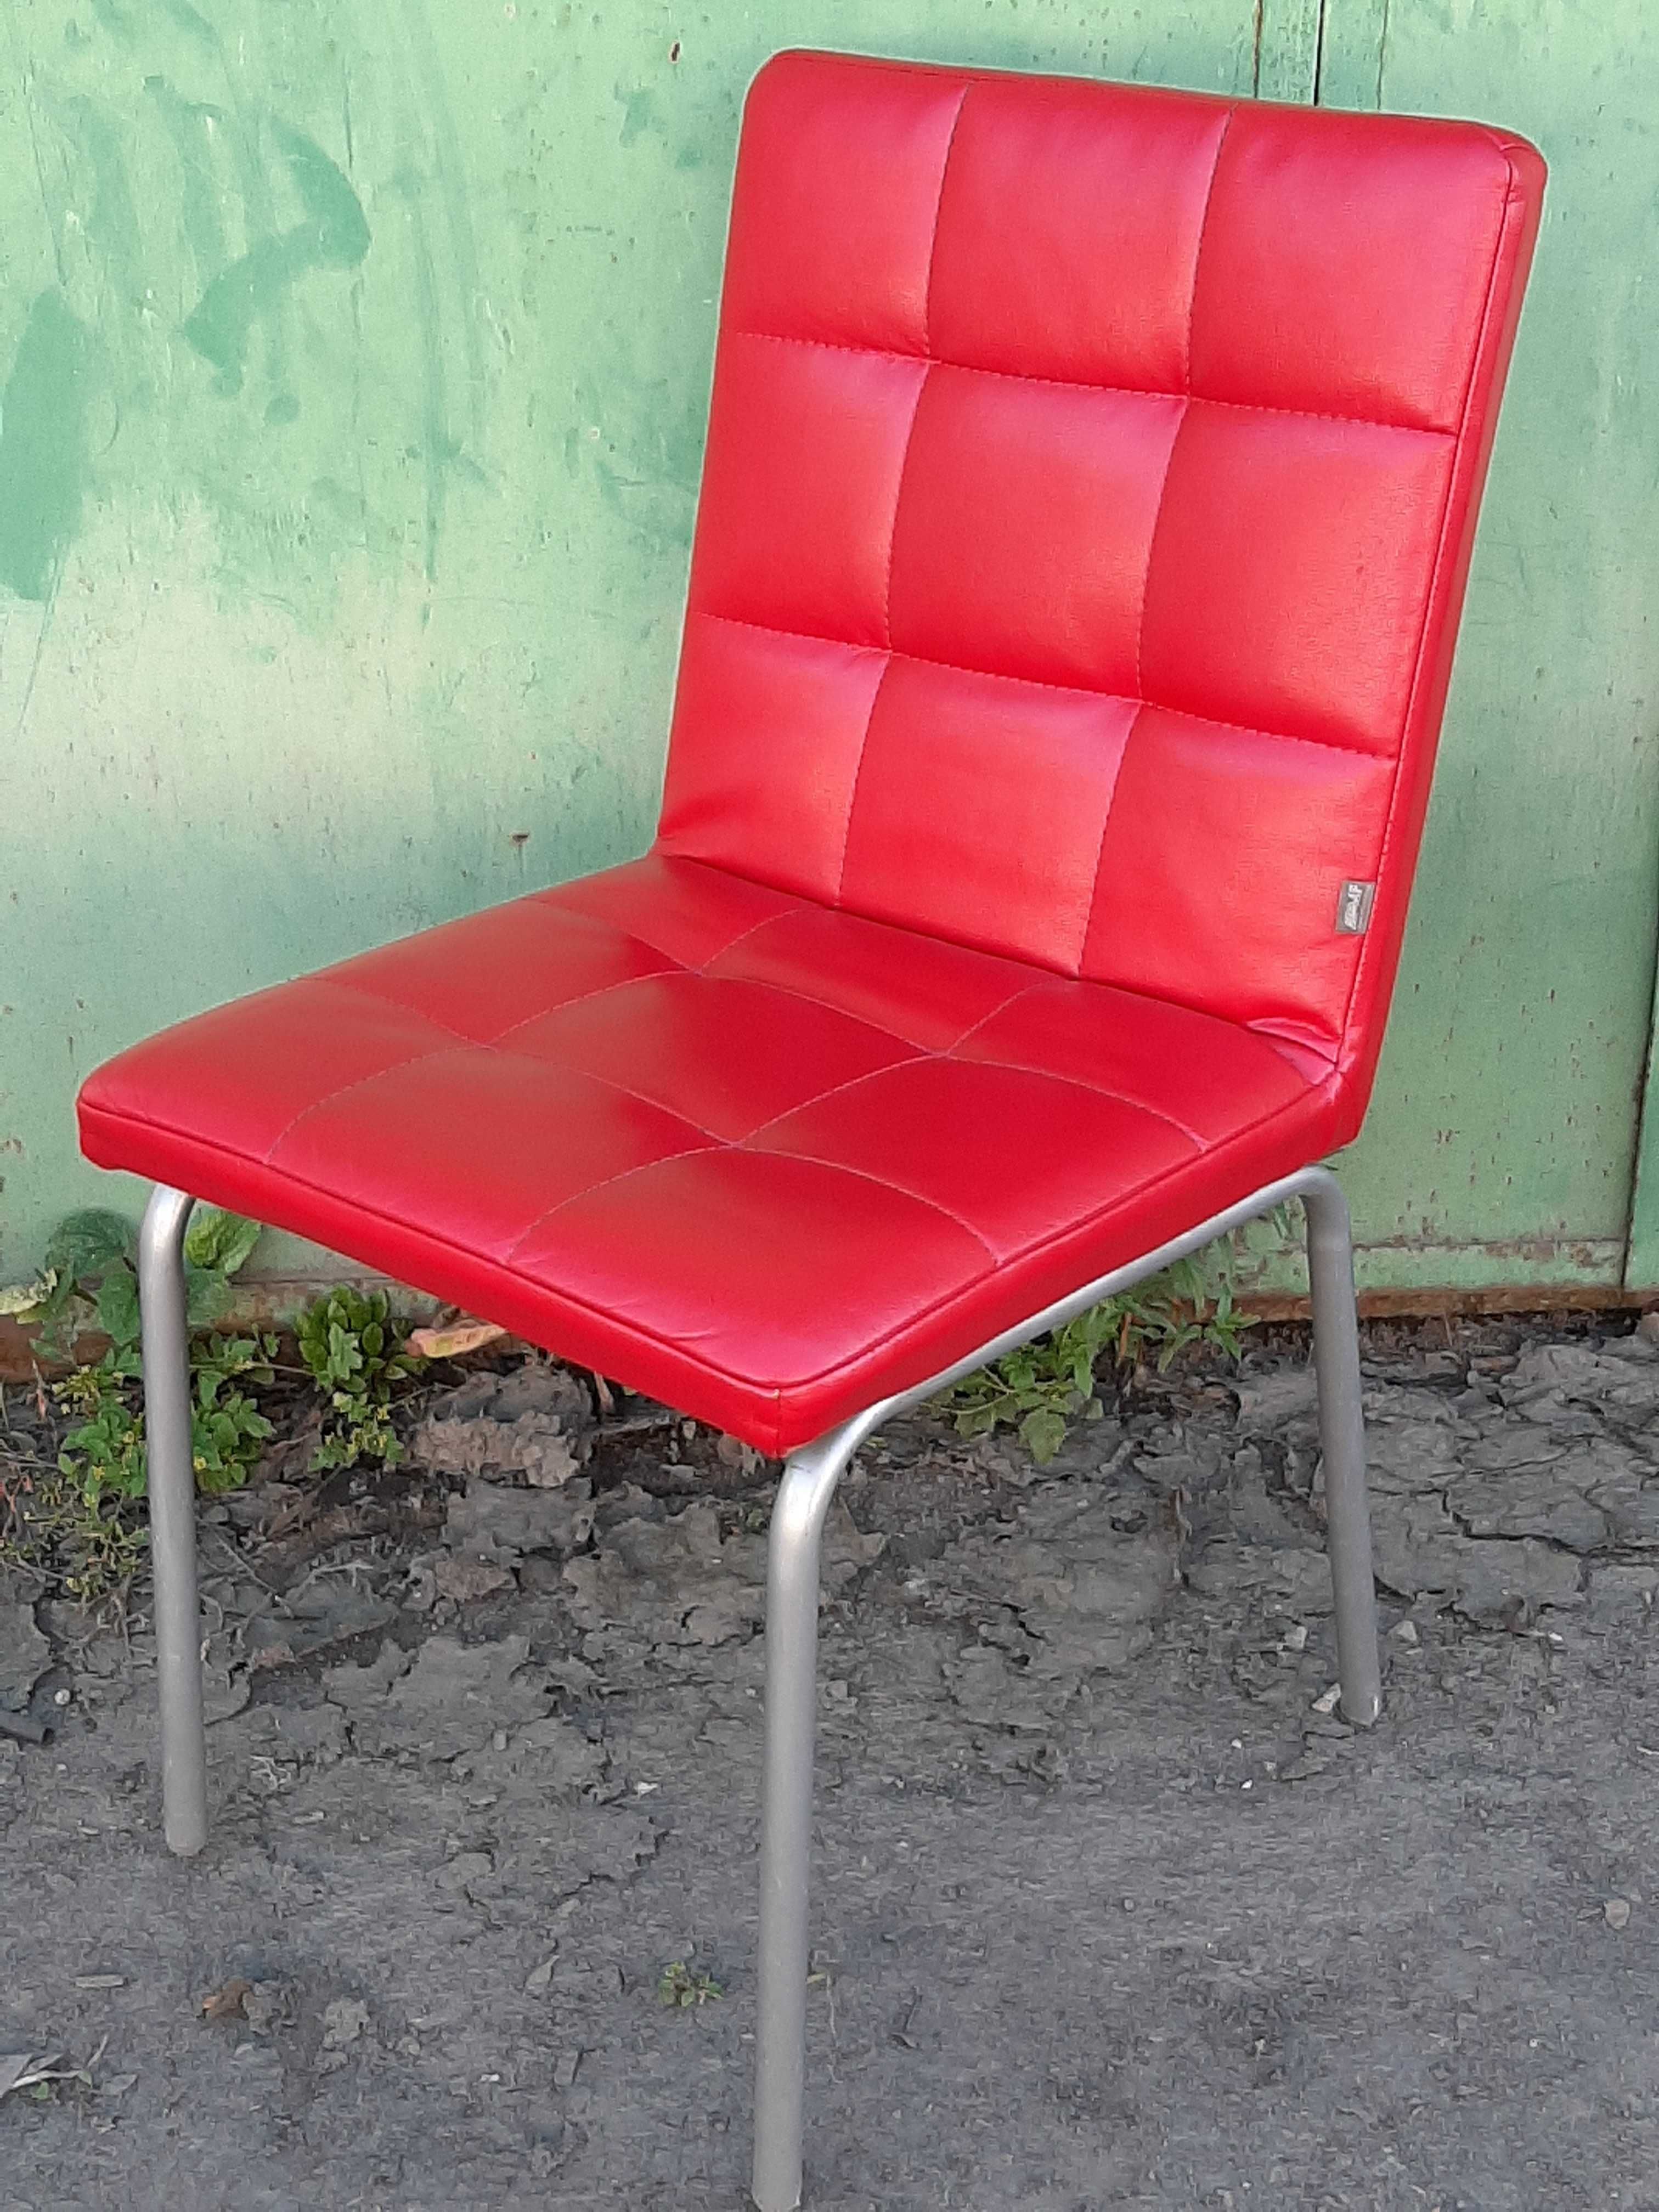 Мягкие удобные стулья ( кресла ) по 1300 грн